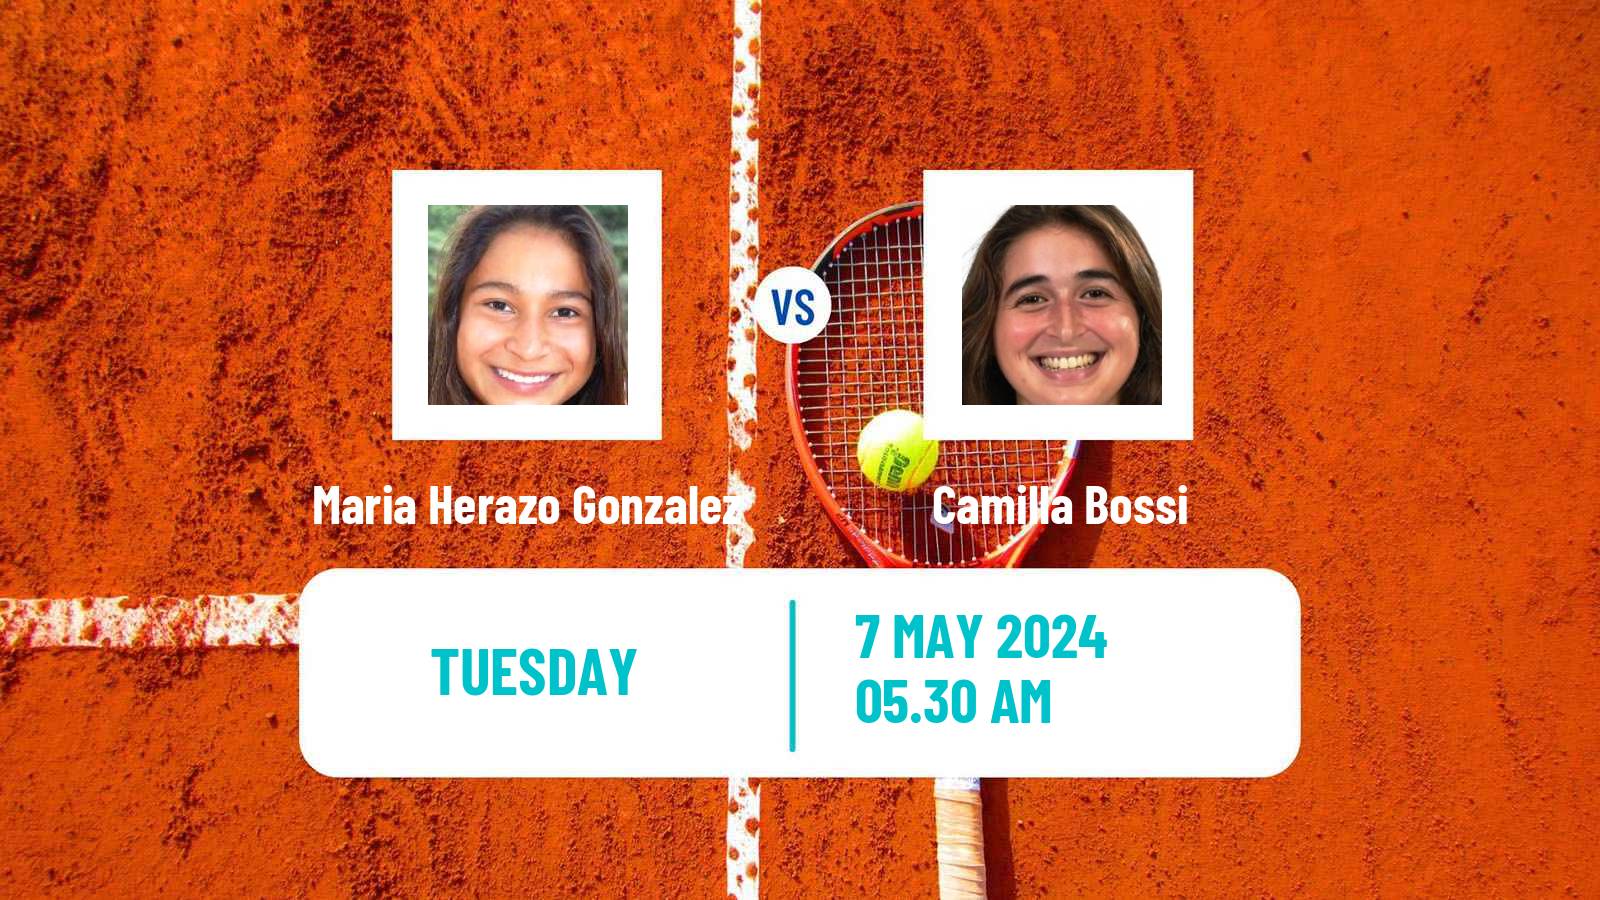 Tennis ITF W15 Monastir 51 Women 2024 Maria Herazo Gonzalez - Camilla Bossi